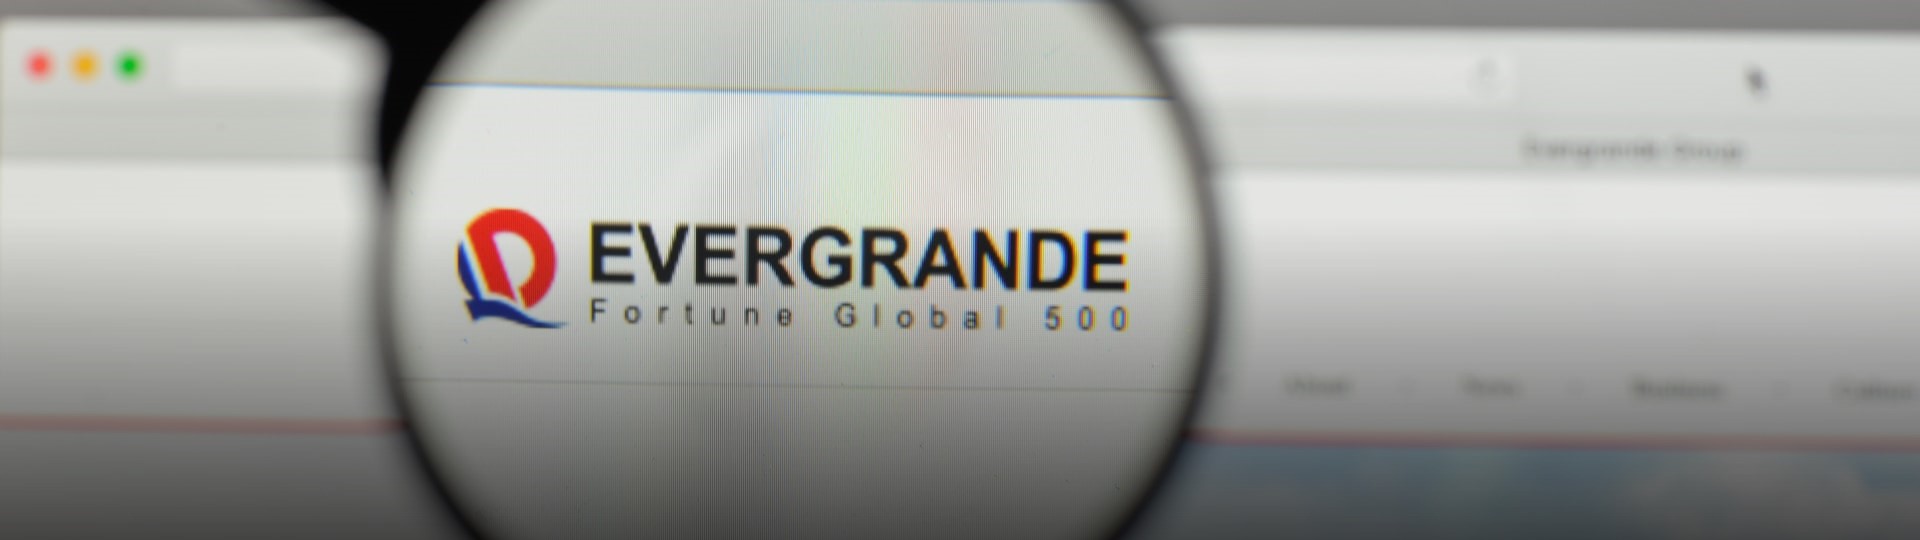 Akcie čínské realitní společnosti Evergrande spadly nejníže od roku 2010